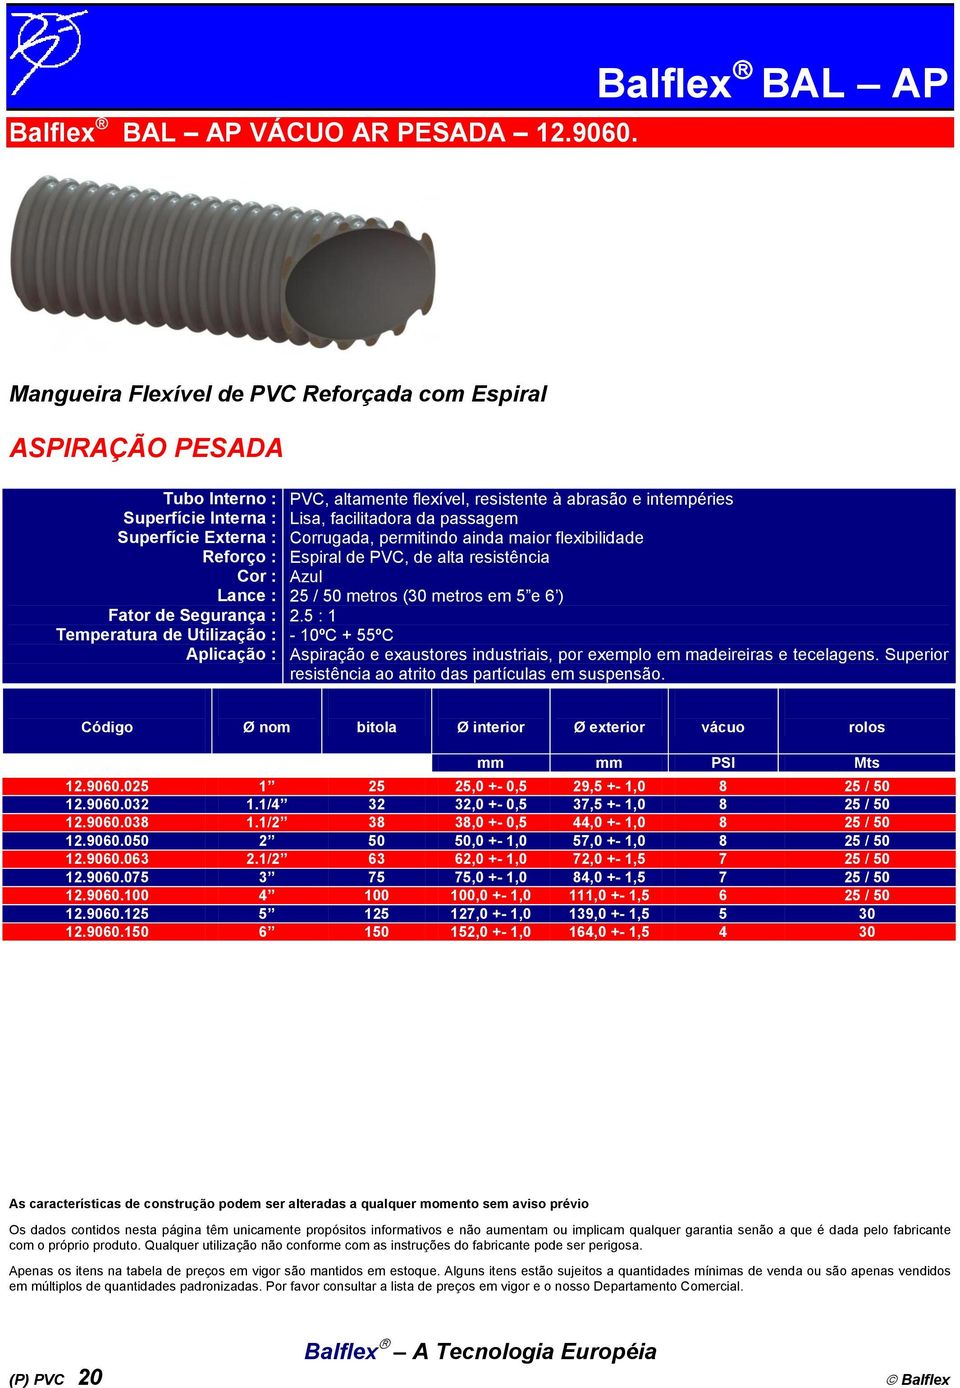 flexibilidade Espiral de PVC, de alta resistência Azul 25 / 50 metros (30 metros em 5 e 6 ) 2.5 : 1 Aspiração e exaustores industriais, por exemplo em madeireiras e tecelagens.